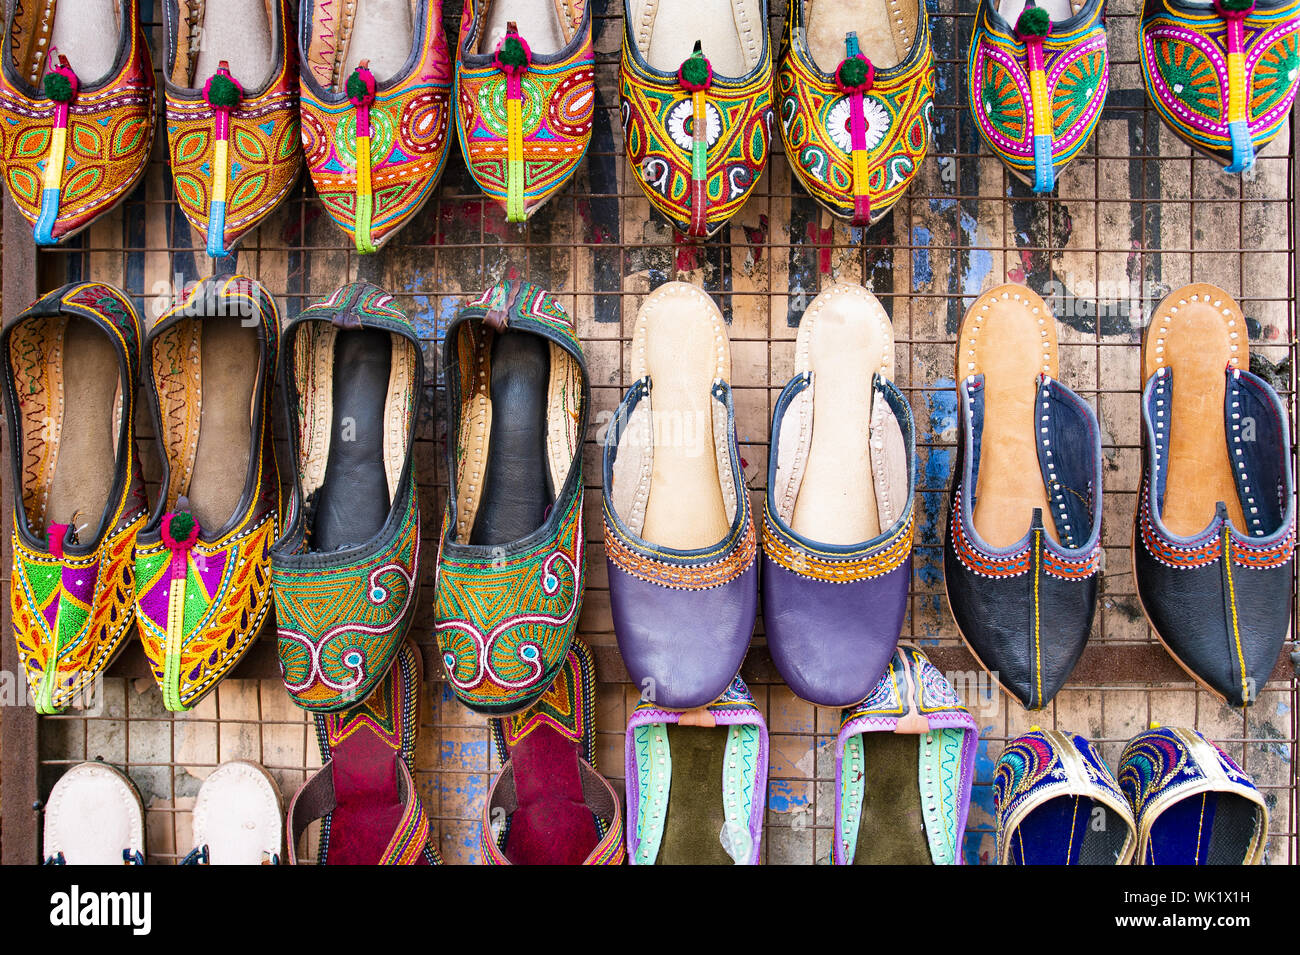 Schönen und bunten traditionellen Rajasthani Schuhe hängen in einem Shop in Jaipur. Mojari oder Khussa oder Saleem Shahi's ist ein Stil von handgefertigten Schuhen. Stockfoto